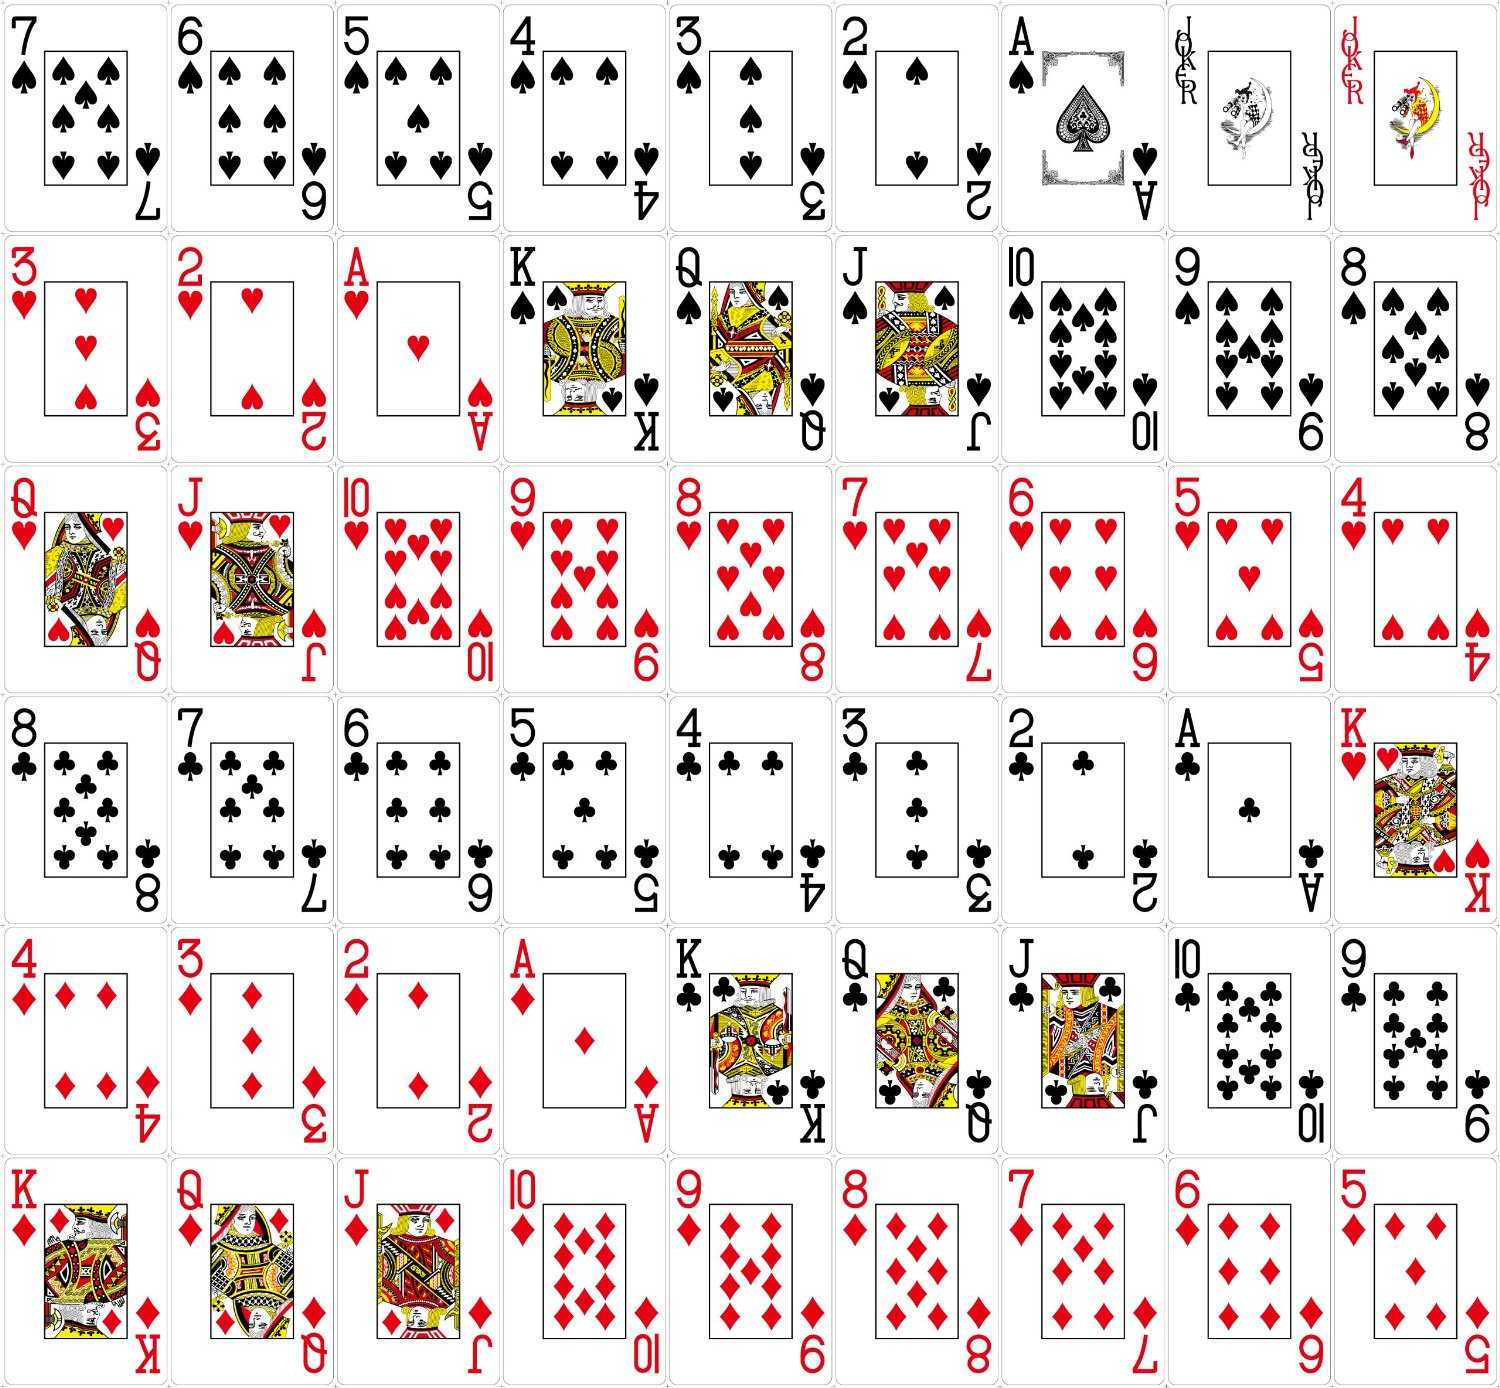 Колода в 52 карты в холдеме